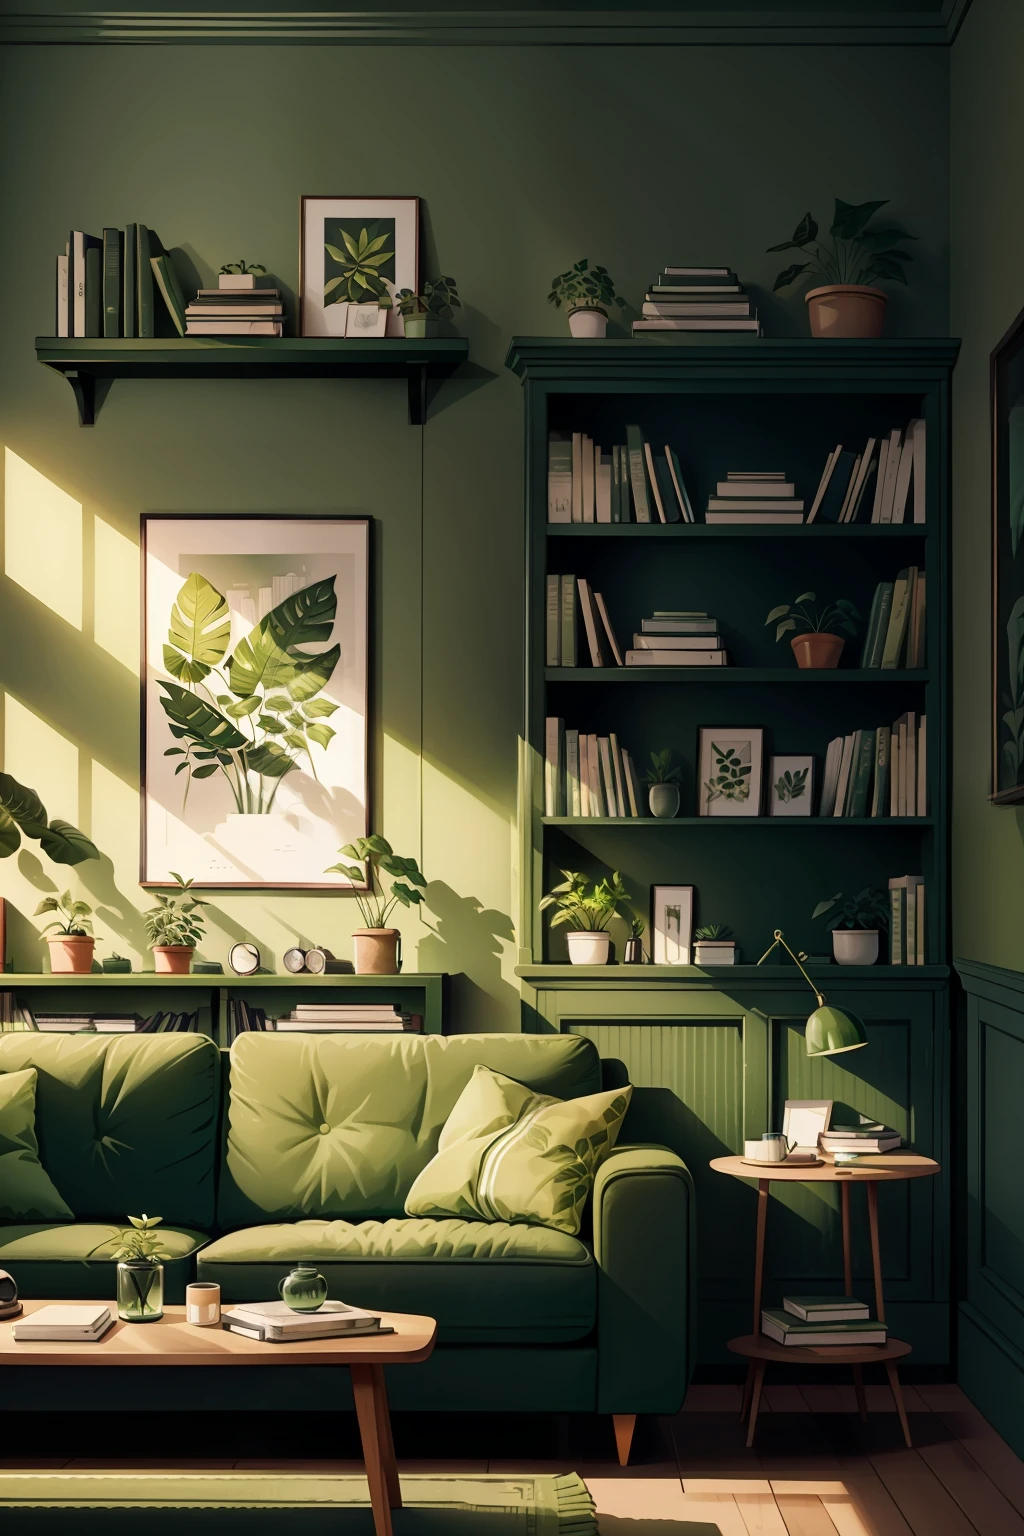 緑のソファと壁に緑の植物、本棚に本が置かれたリビングルーム